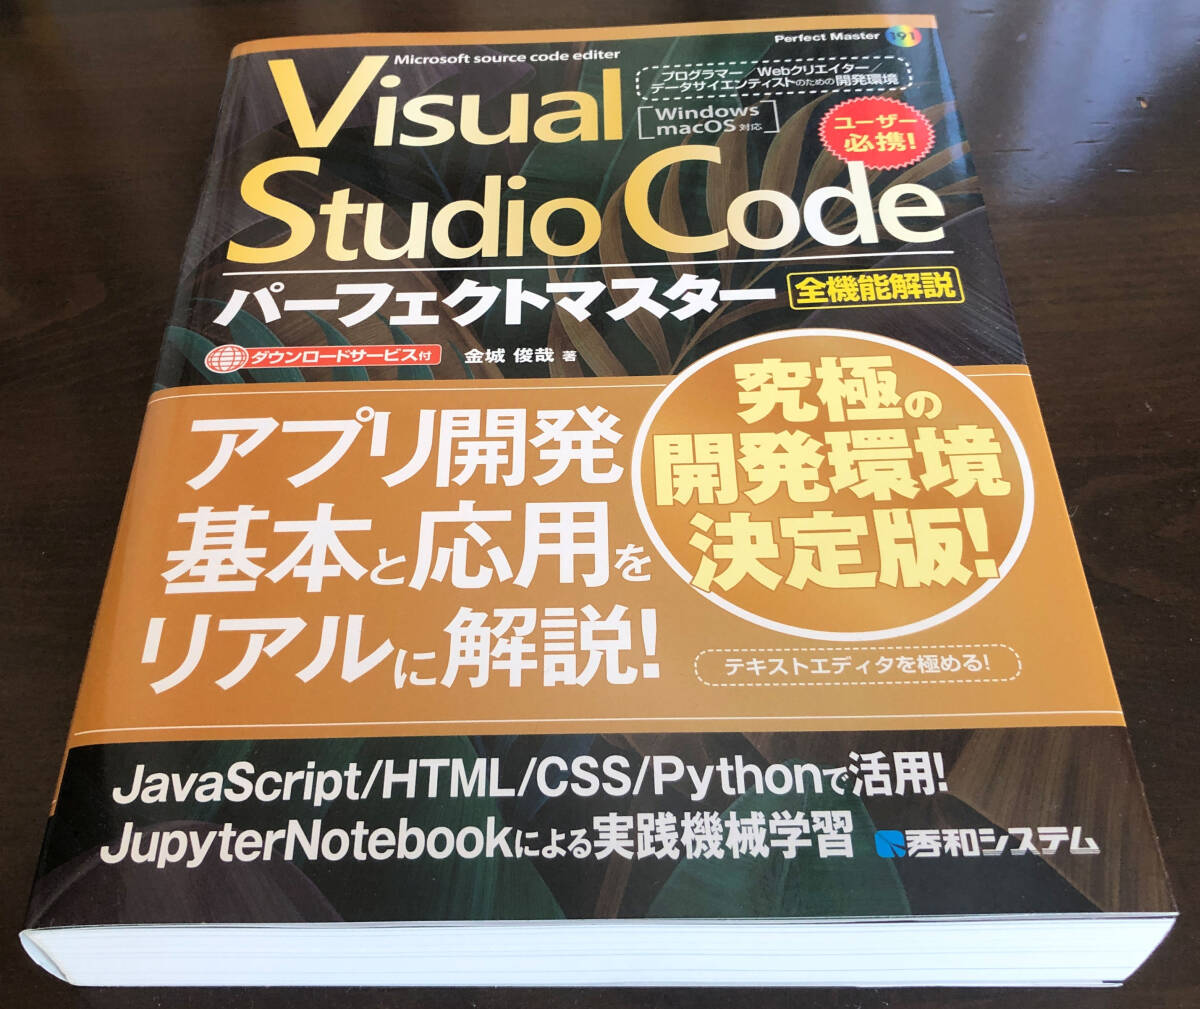 Visual Studio Code Perfect тормозные колодки (191) все функция описание золотой замок ..: работа новый товар * не использовался 